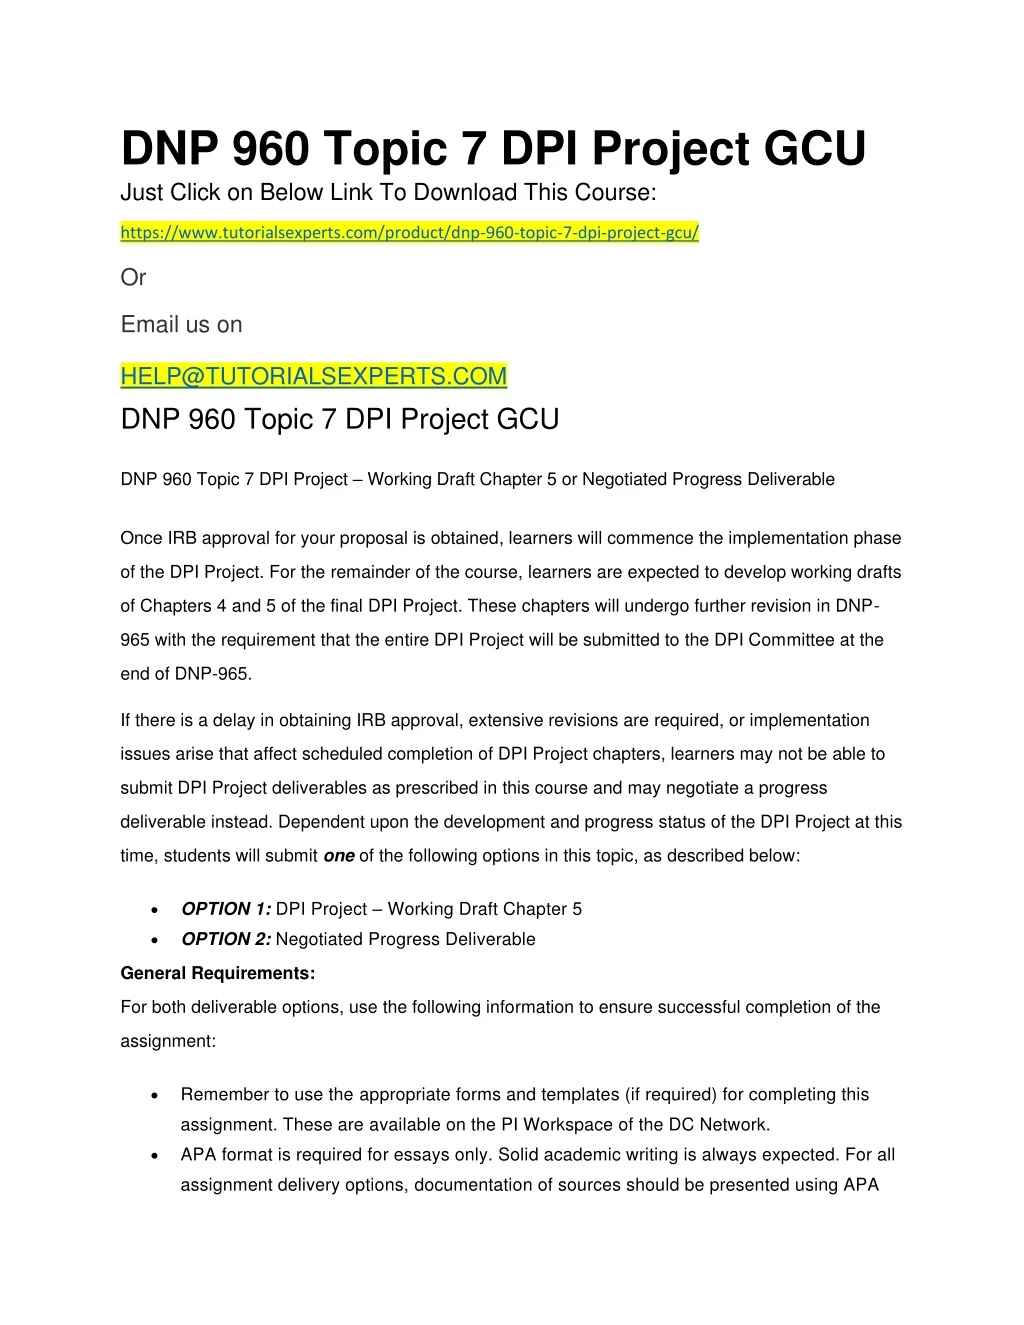 dnp 960 topic 7 dpi project gcu just click